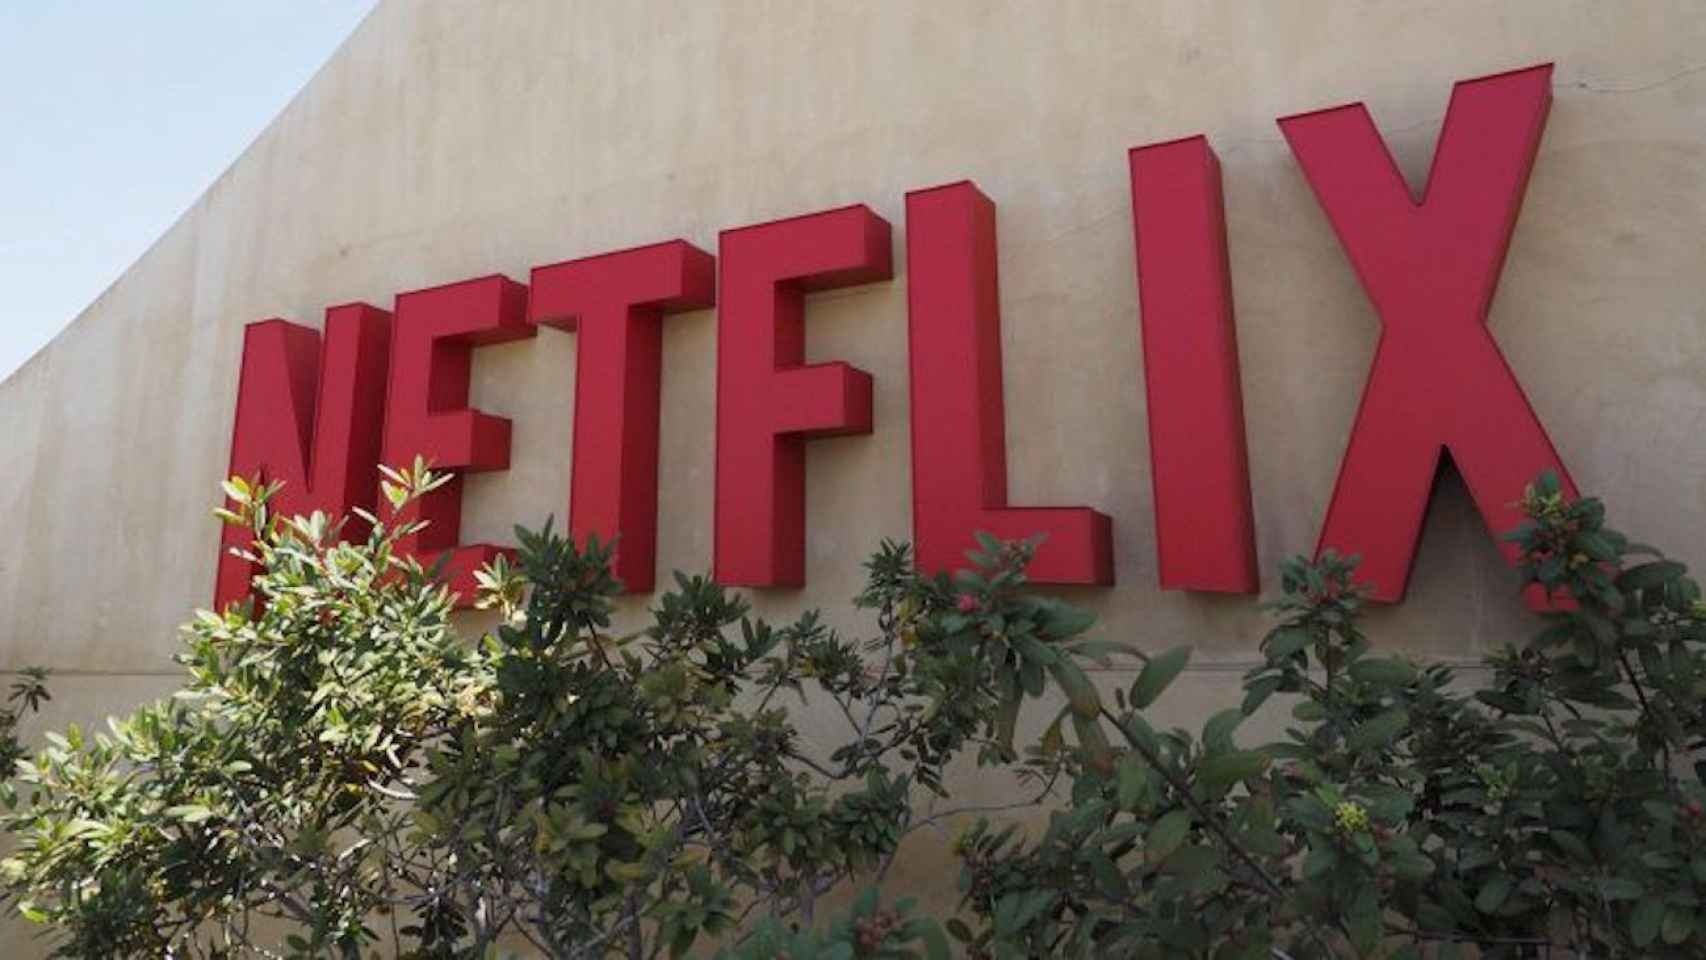 Fotografía del logotipo Netflix, en su sede de Los Gatos, California (Estados Unidos) / EFE - John G. Mabanglo